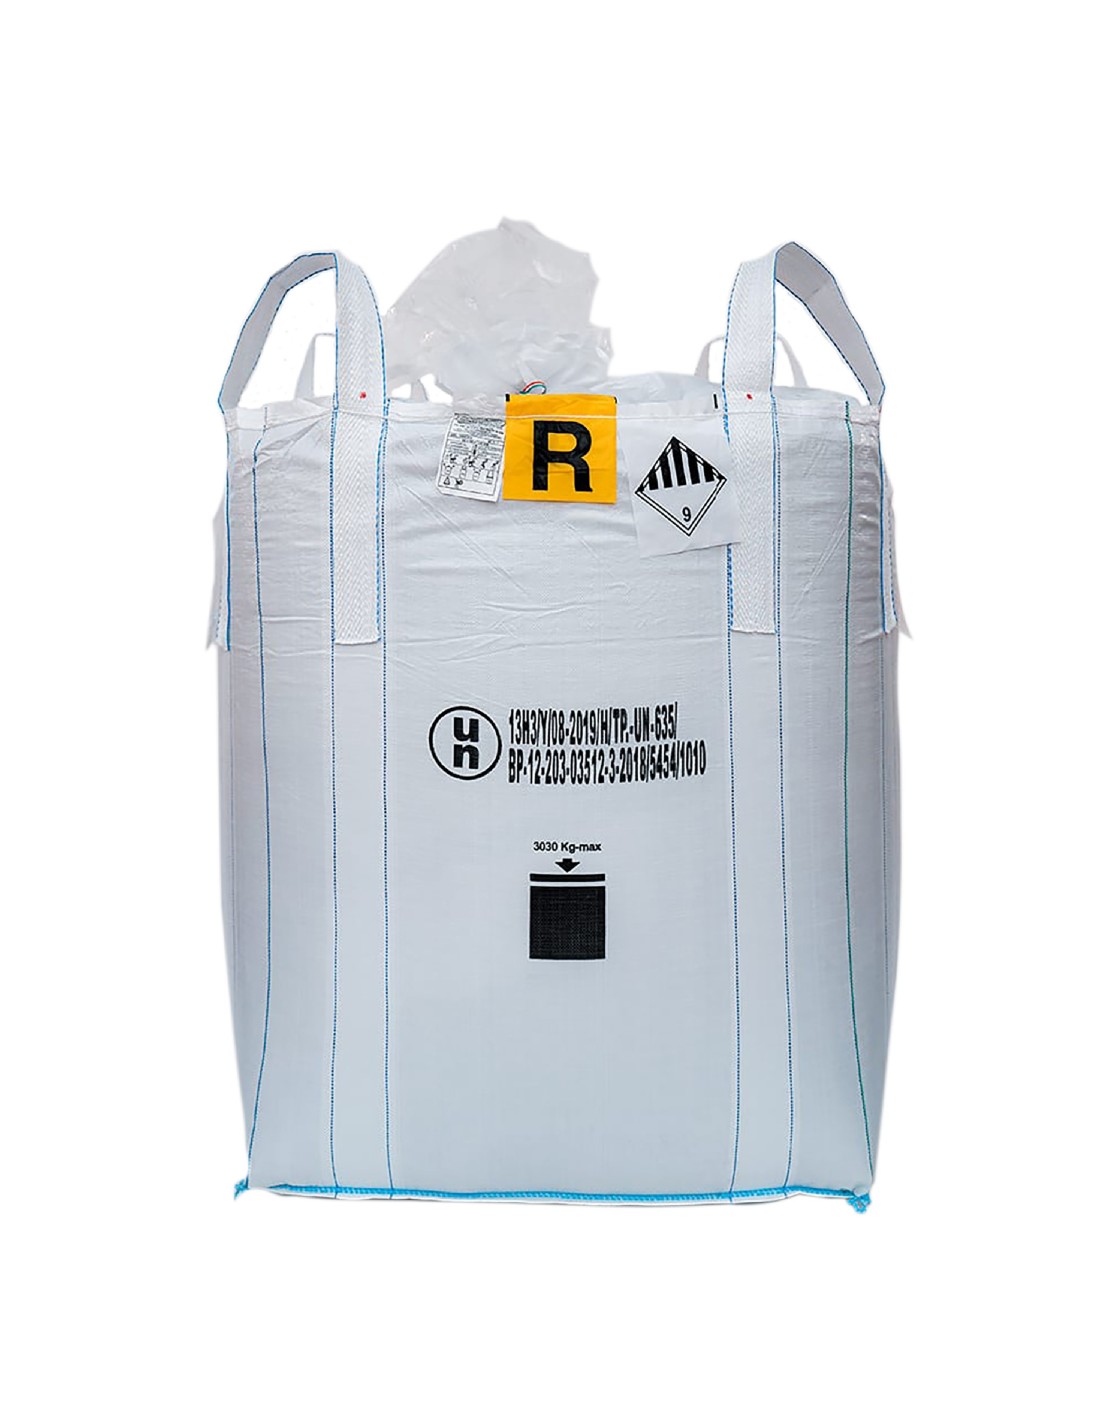 Imballaggi 2000 - Big Bag R per Rifiuti Pericolosi